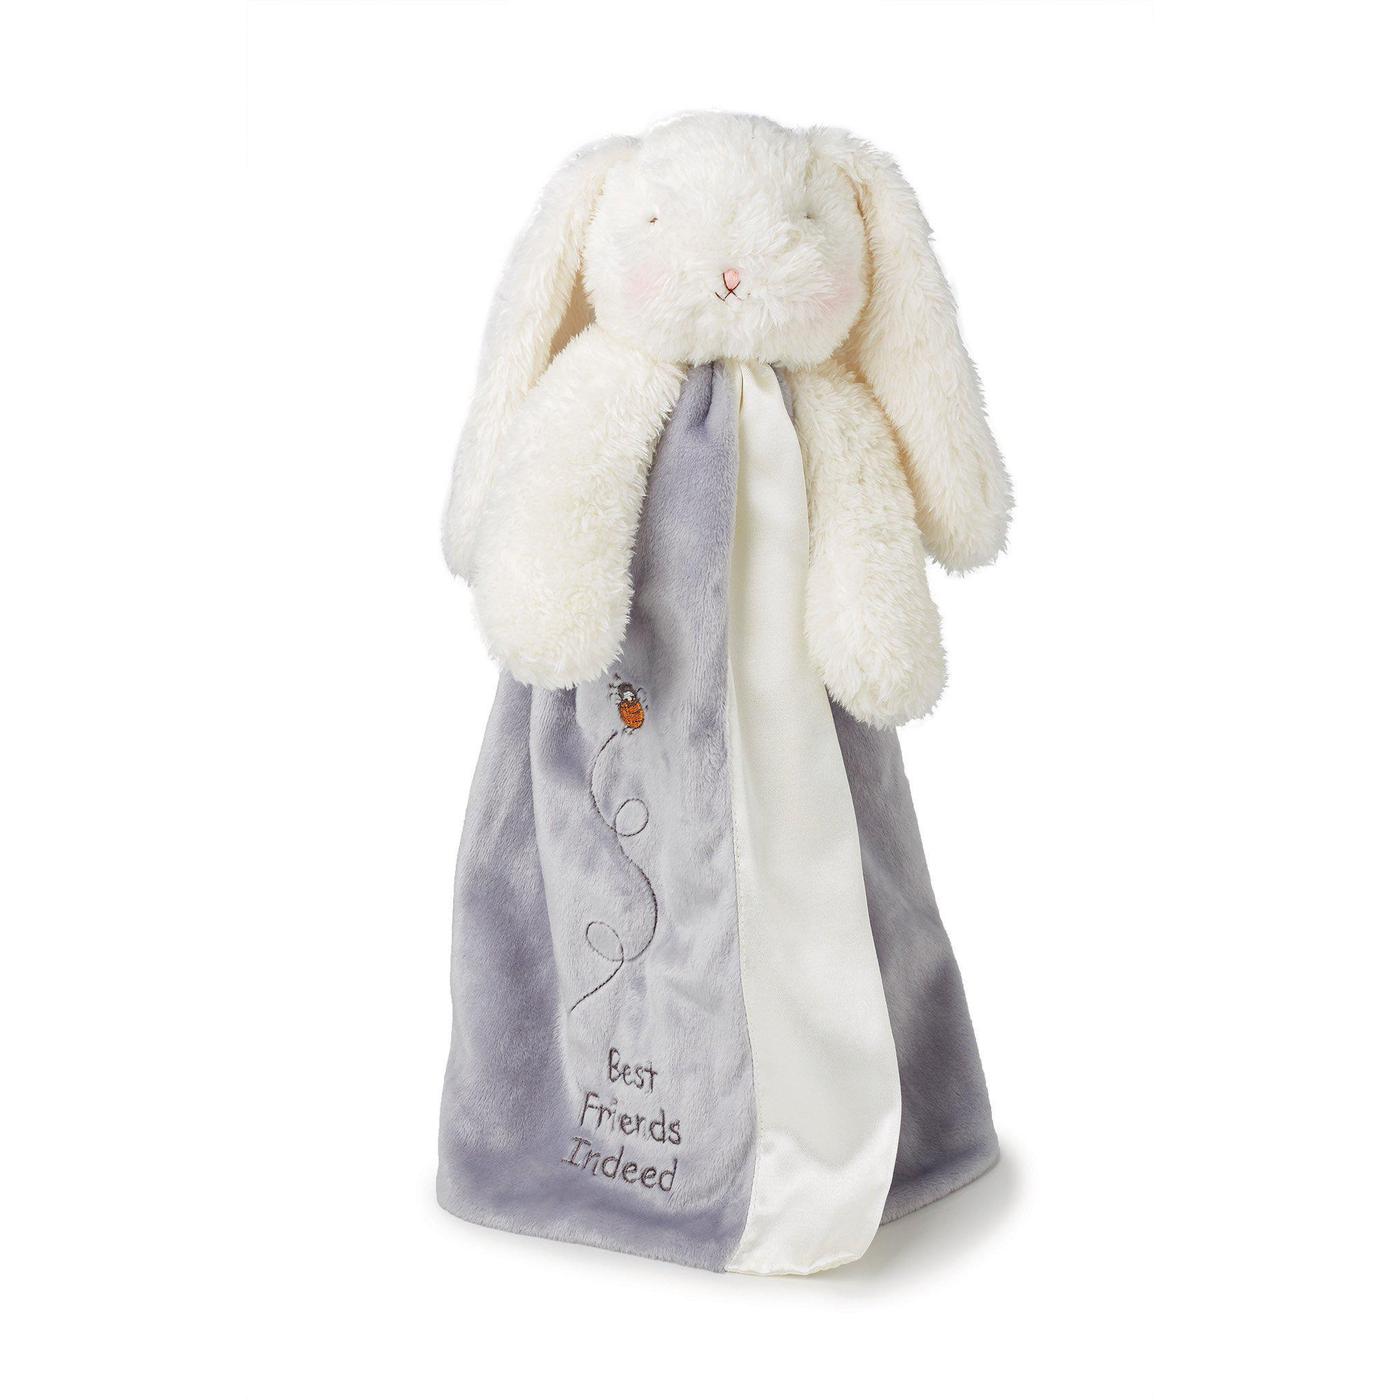 Everything Bloom Bunny Baby Bundle Gift Set